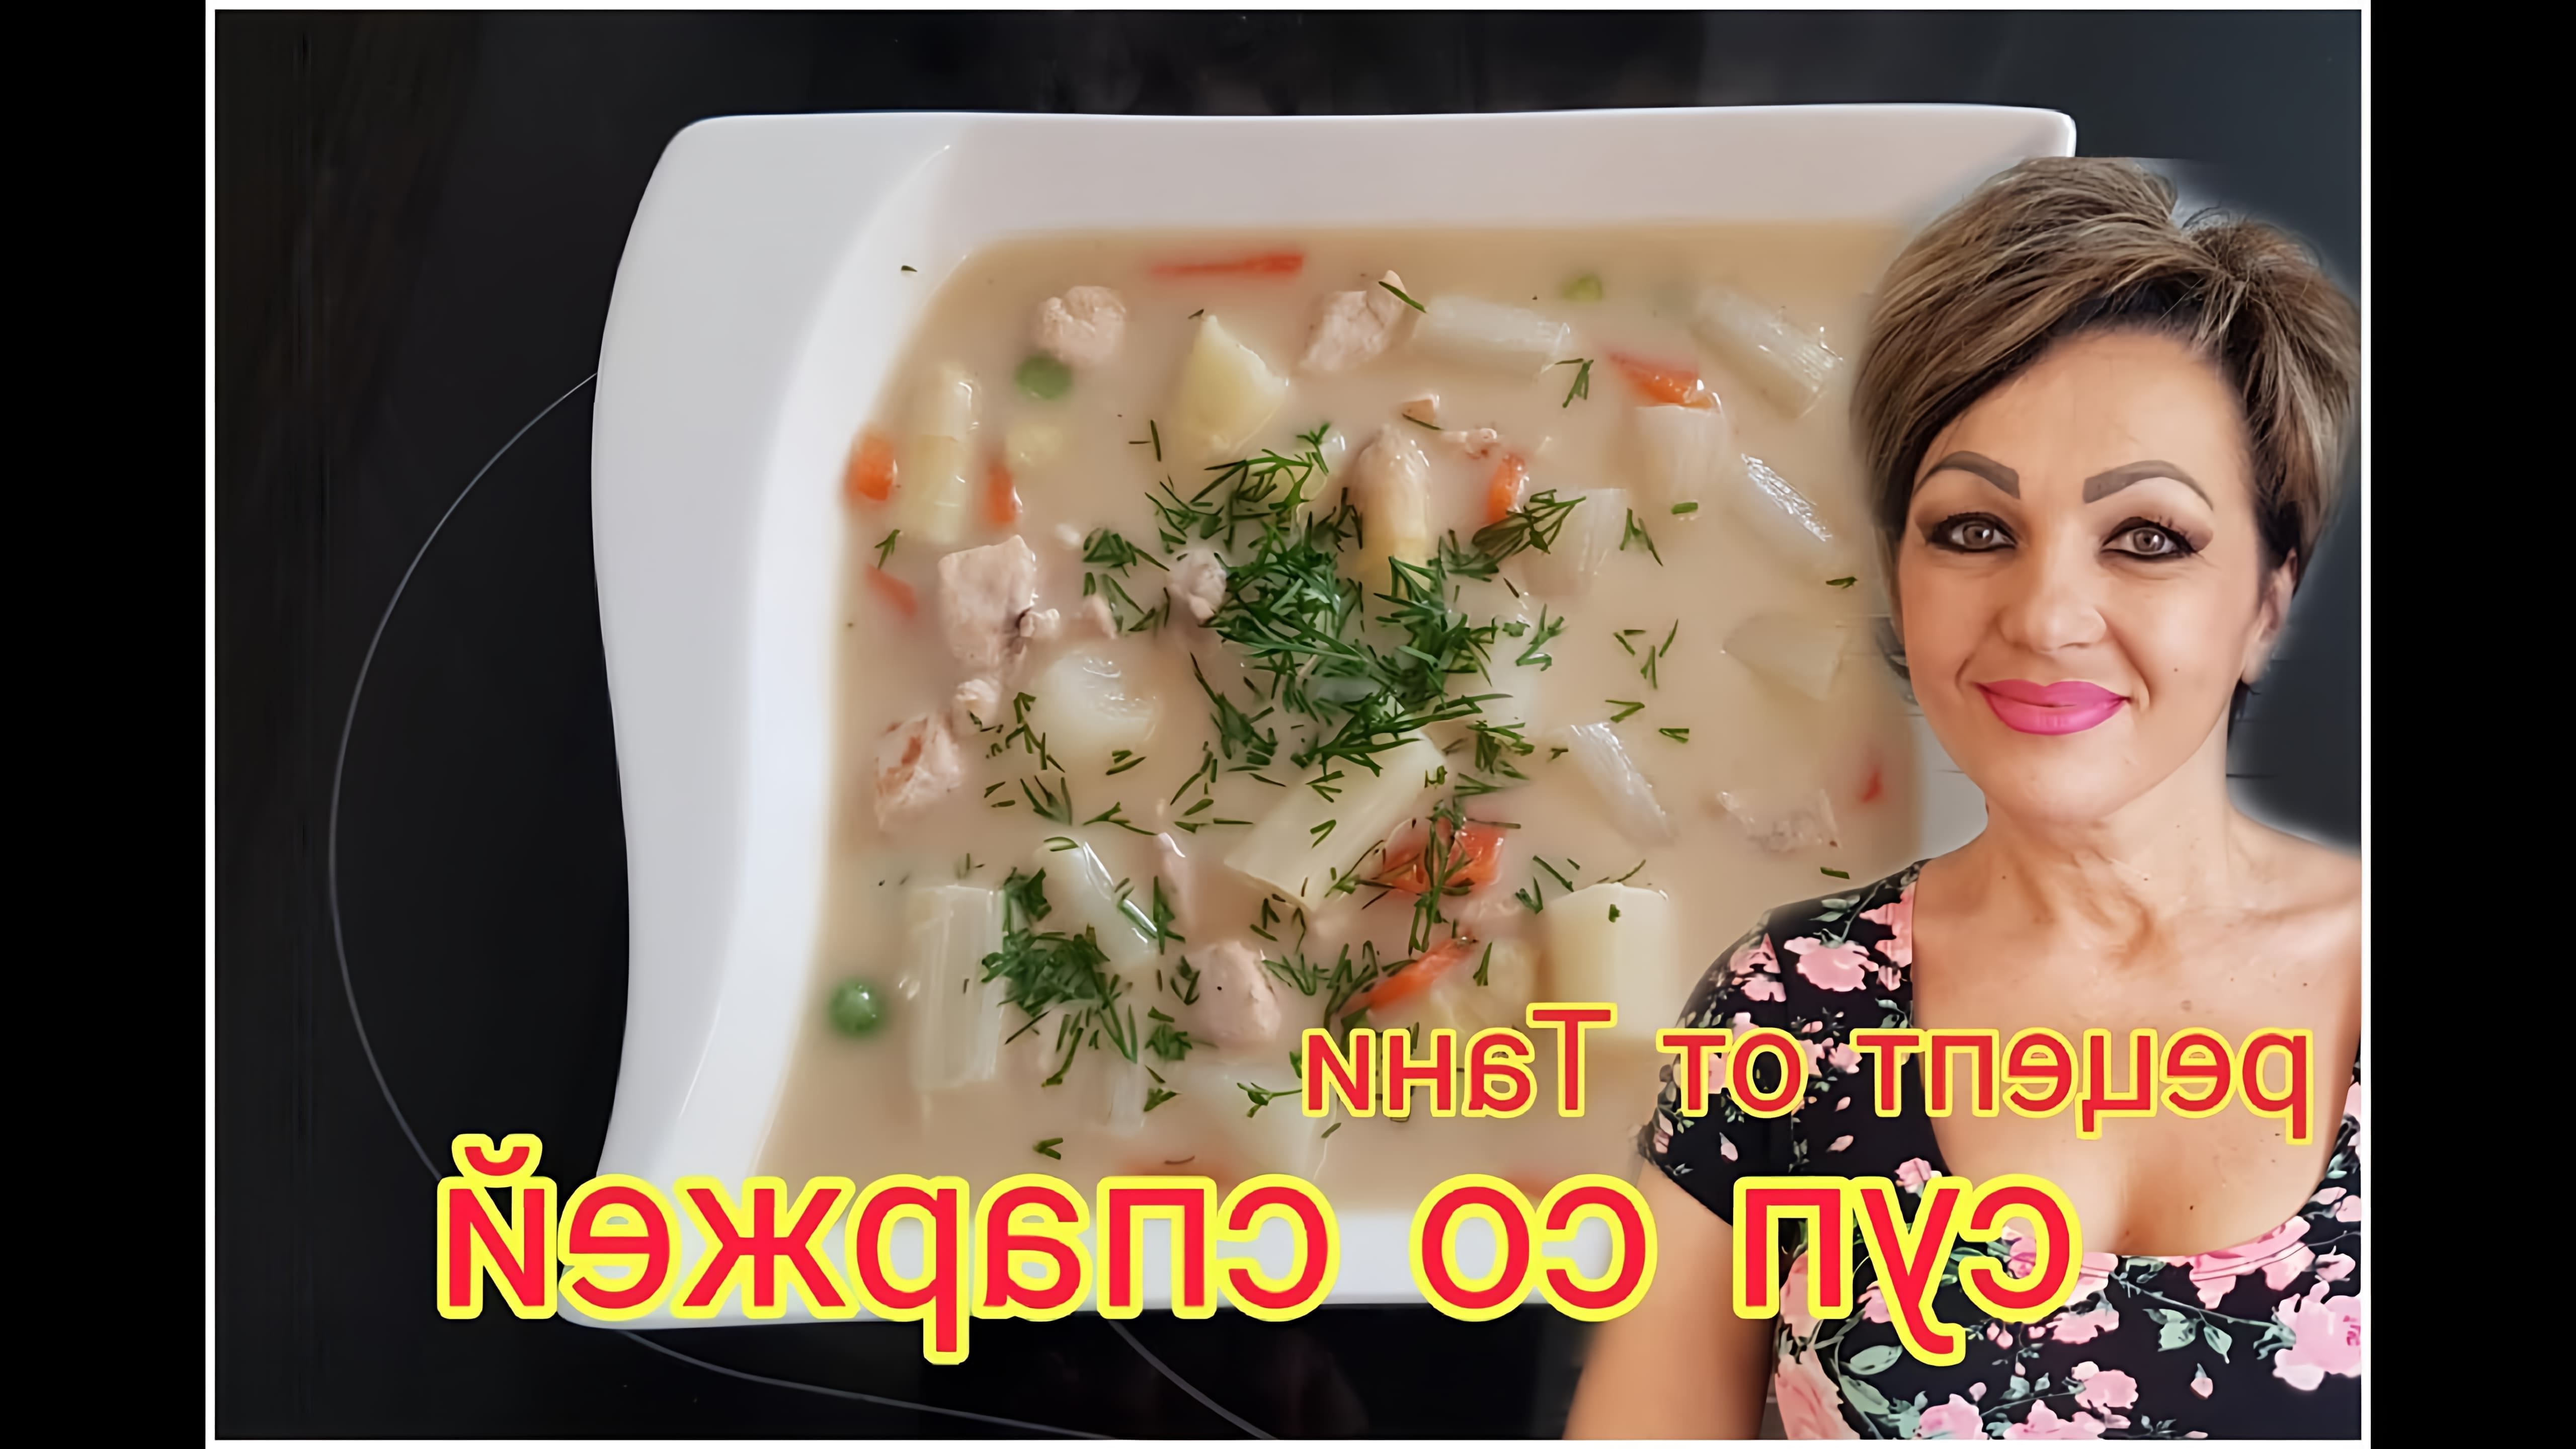 В этом видео демонстрируется рецепт приготовления вкусного супа со спаржей